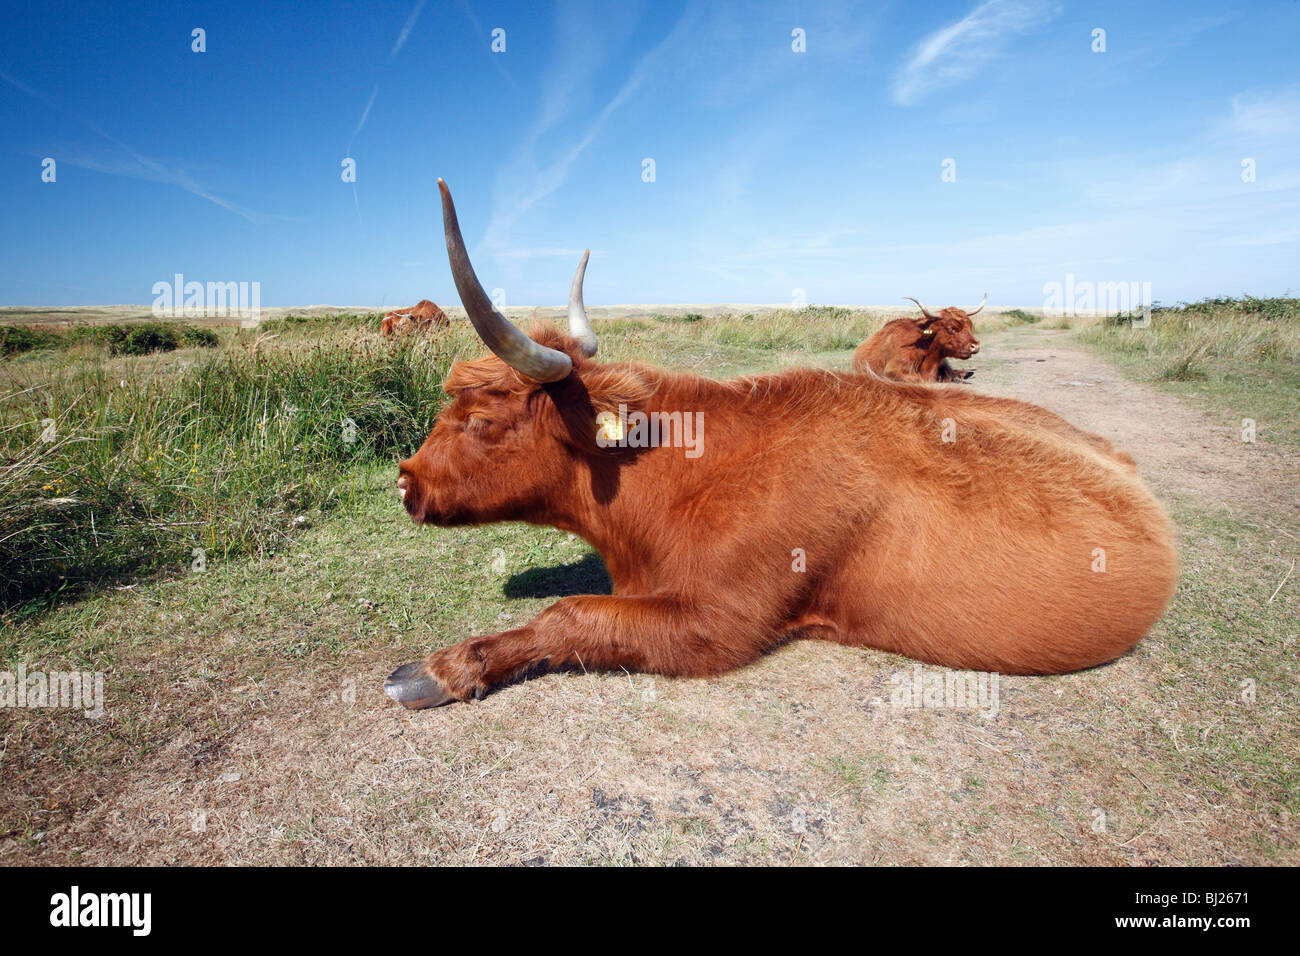 Highland scozzesi bovini (Bos primigenius), mucca in appoggio nelle dune di sabbia del parco nazionale, Isola di Texel, Olanda Foto Stock